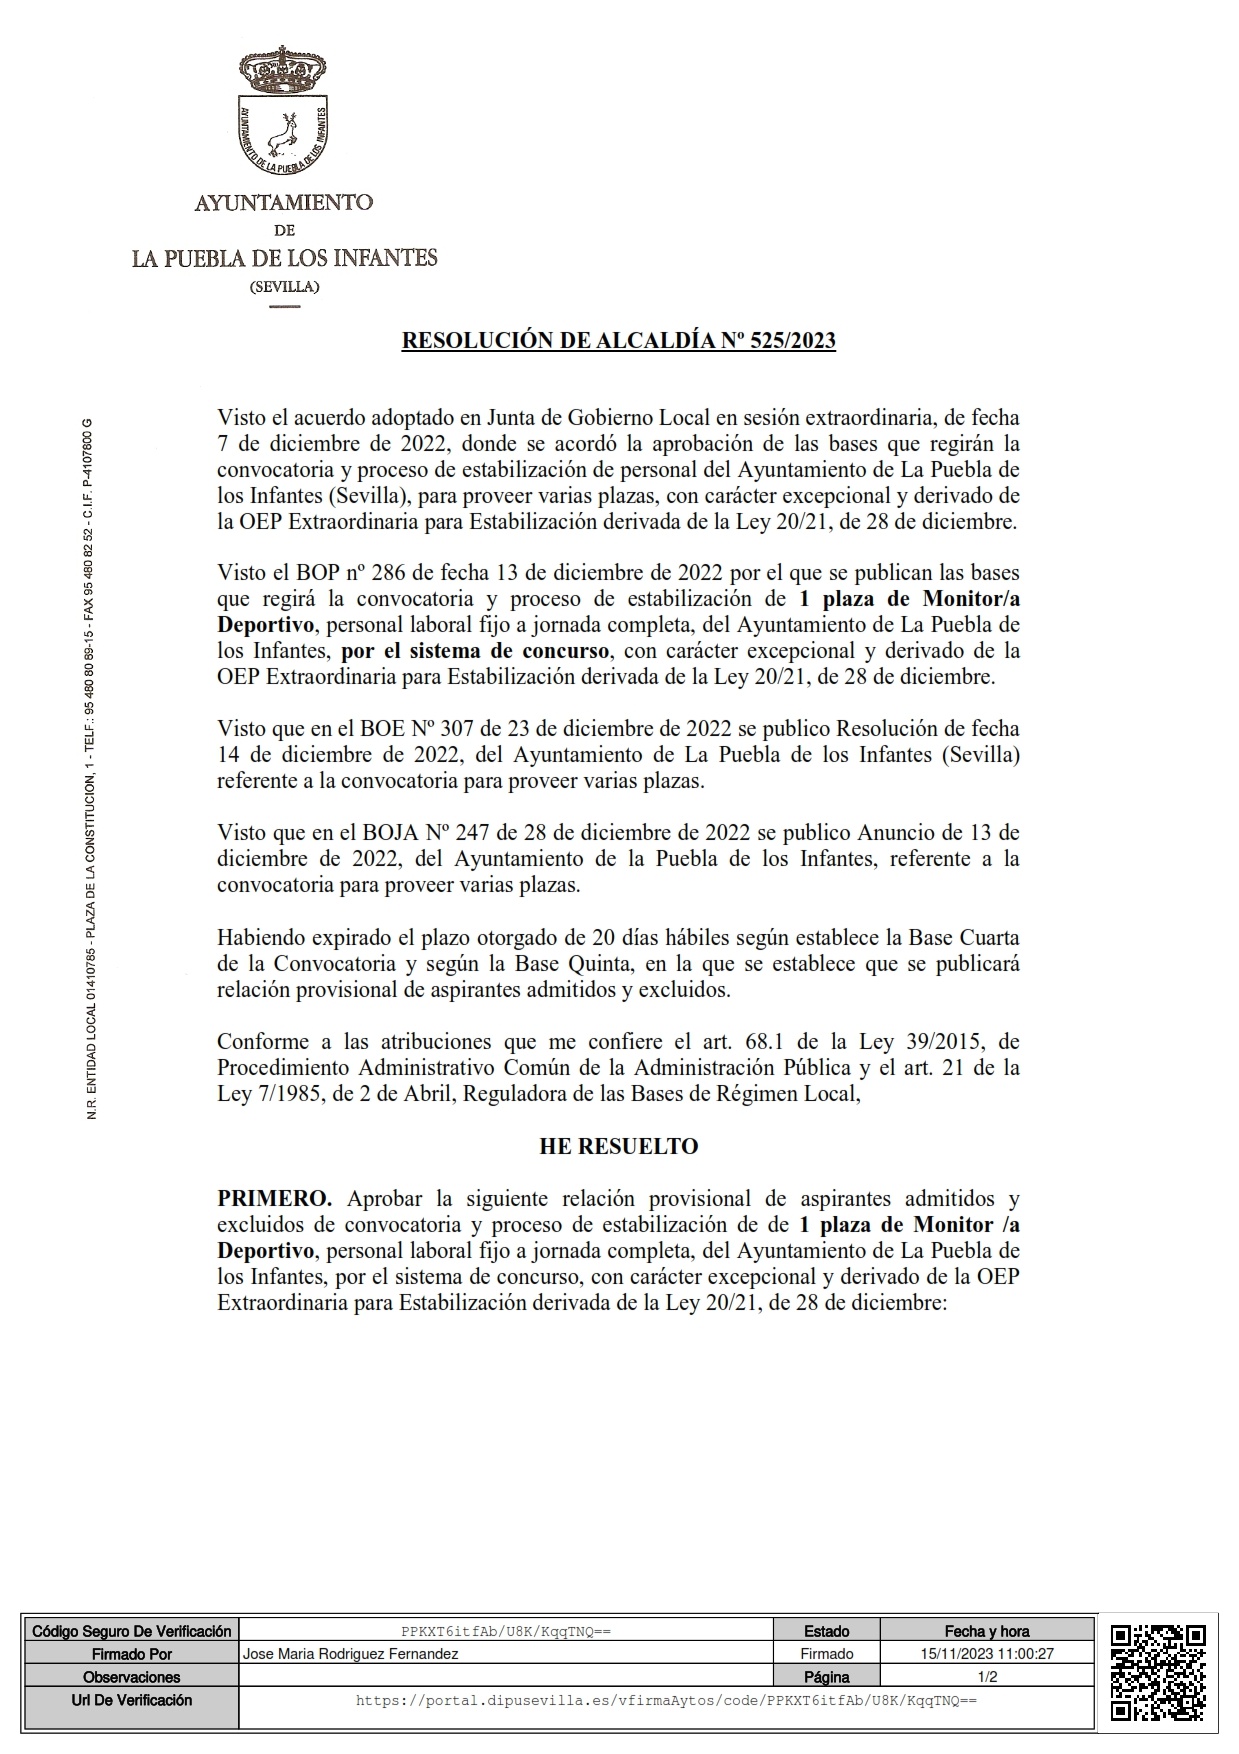 Resolución 525-2023 Lista provisional Admitidos Monitor Deportivo F_001